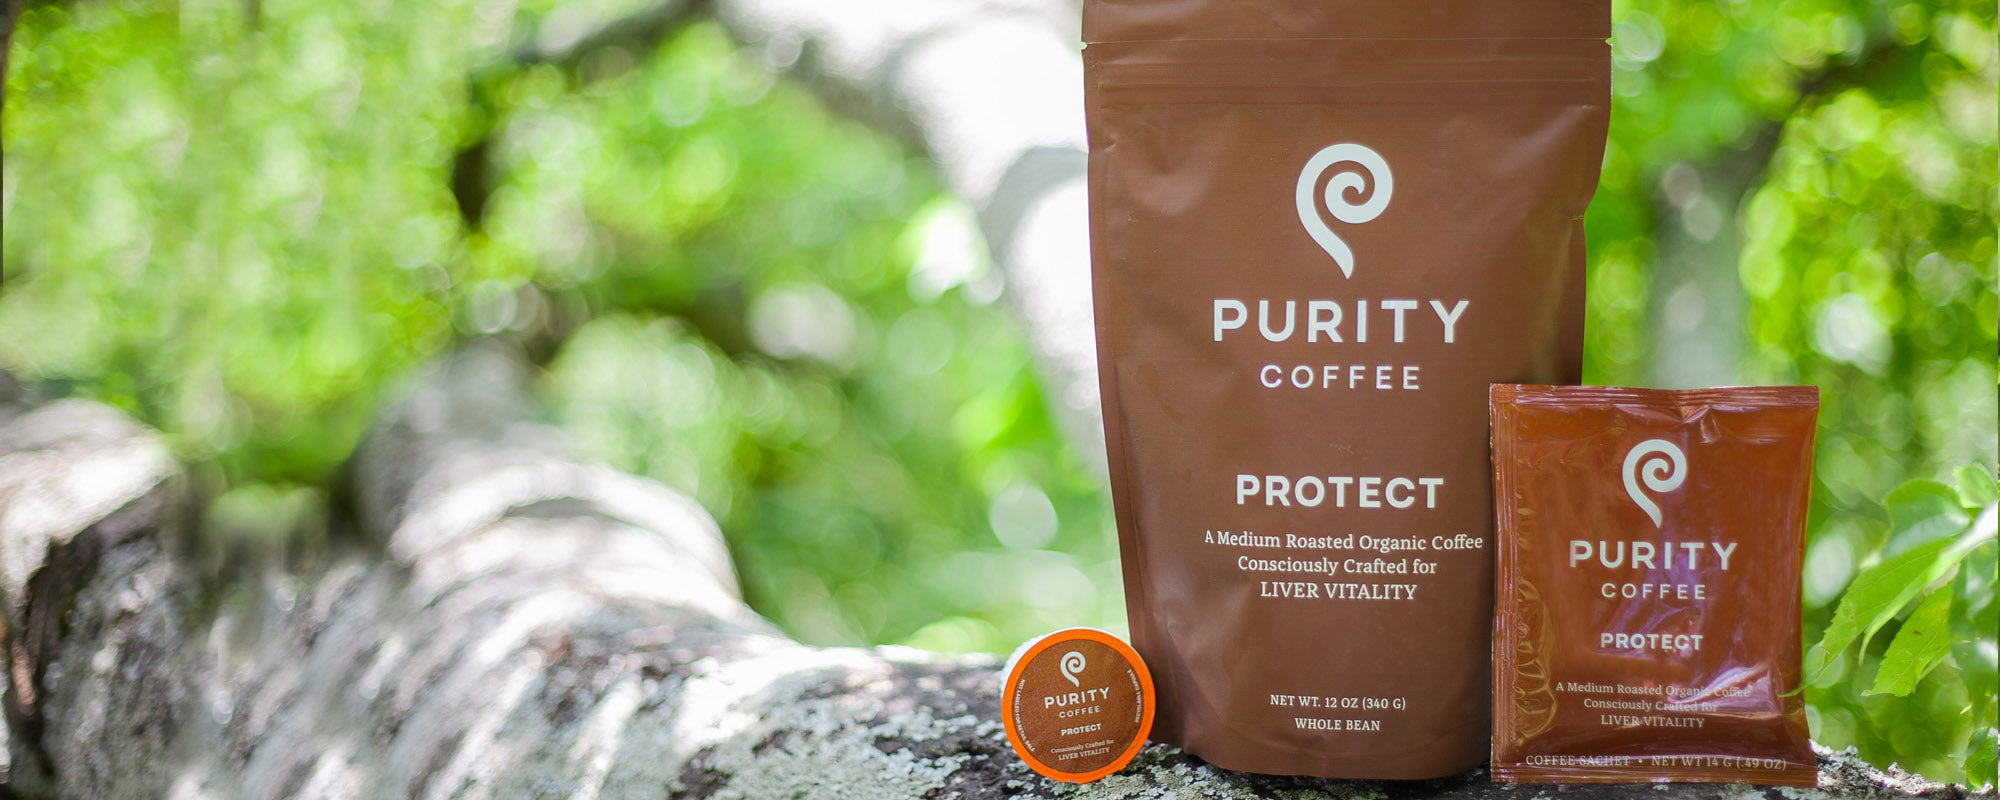 PROTECT Organic Coffee